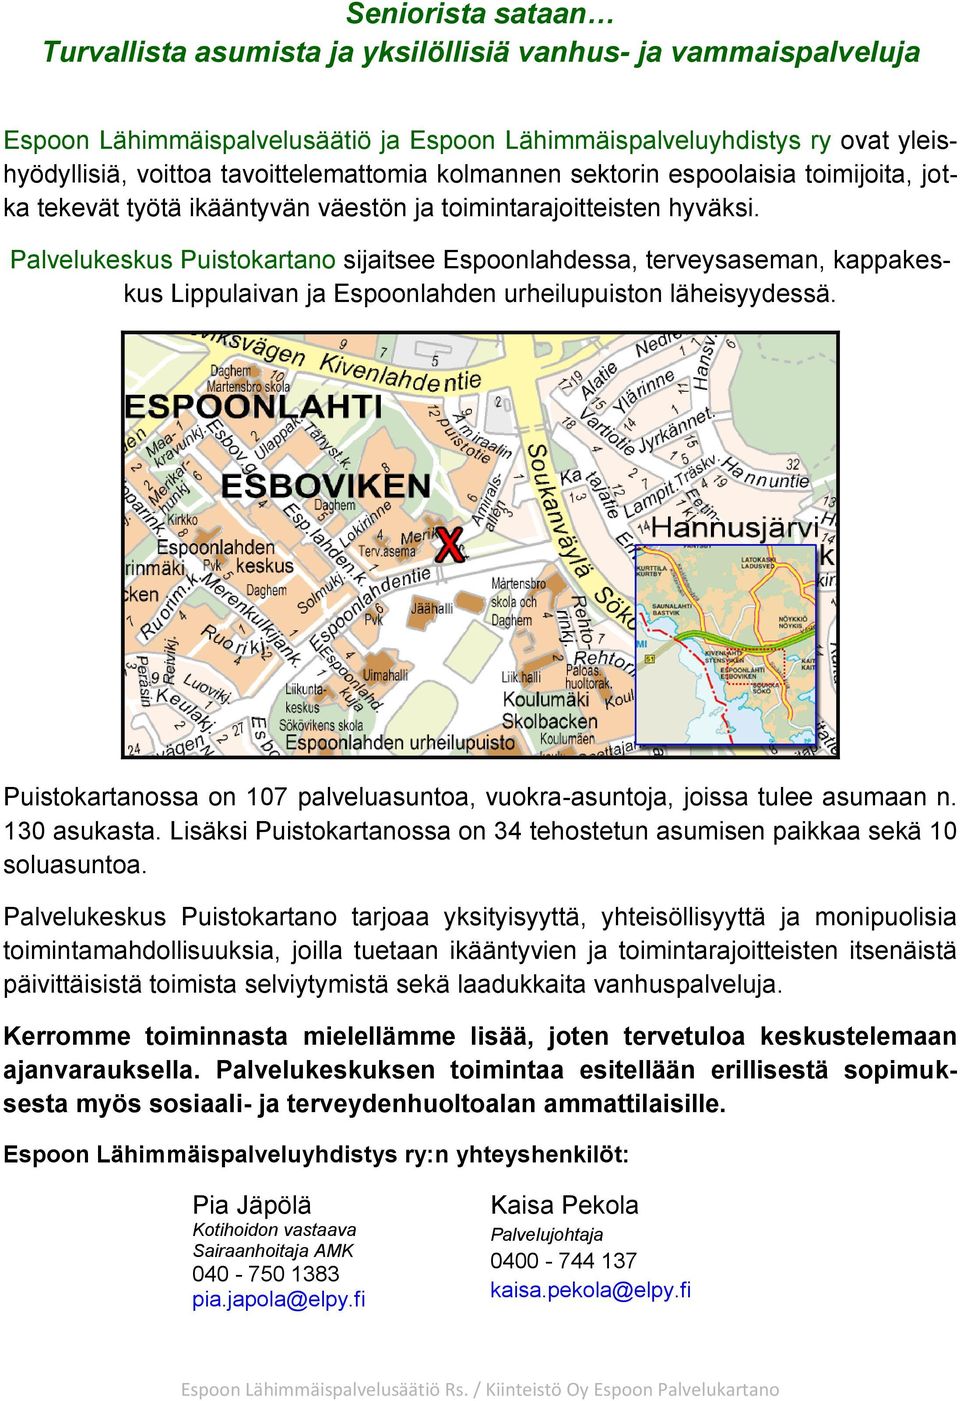 Palvelukeskus Puistokartano sijaitsee Espoonlahdessa, terveysaseman, kappakeskus Lippulaivan ja Espoonlahden urheilupuiston läheisyydessä.